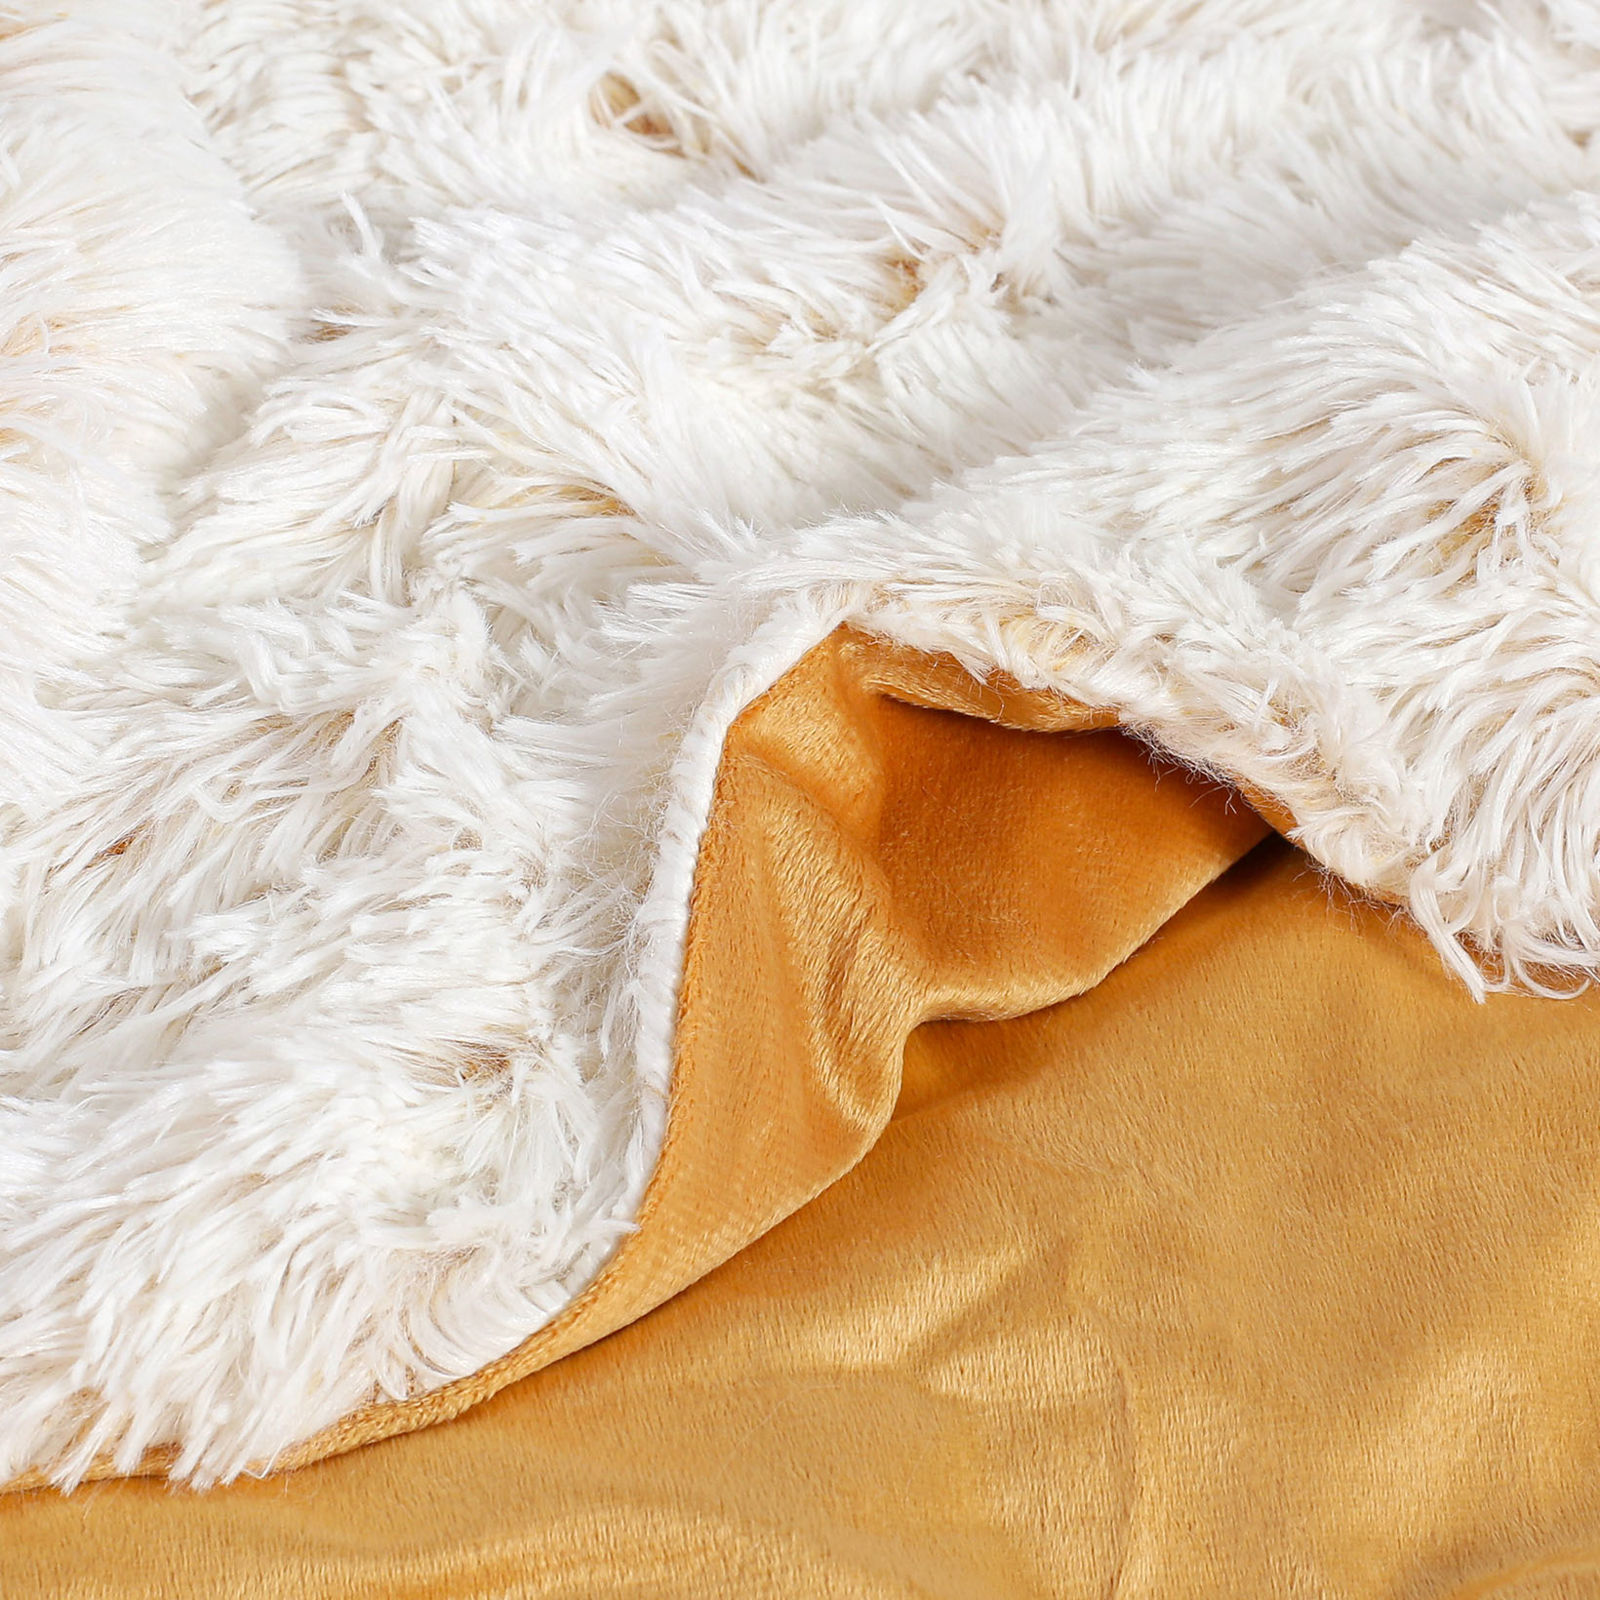 Luxus takaró - MIKRO EXTRA Hosszú szálas - fehér-bézs